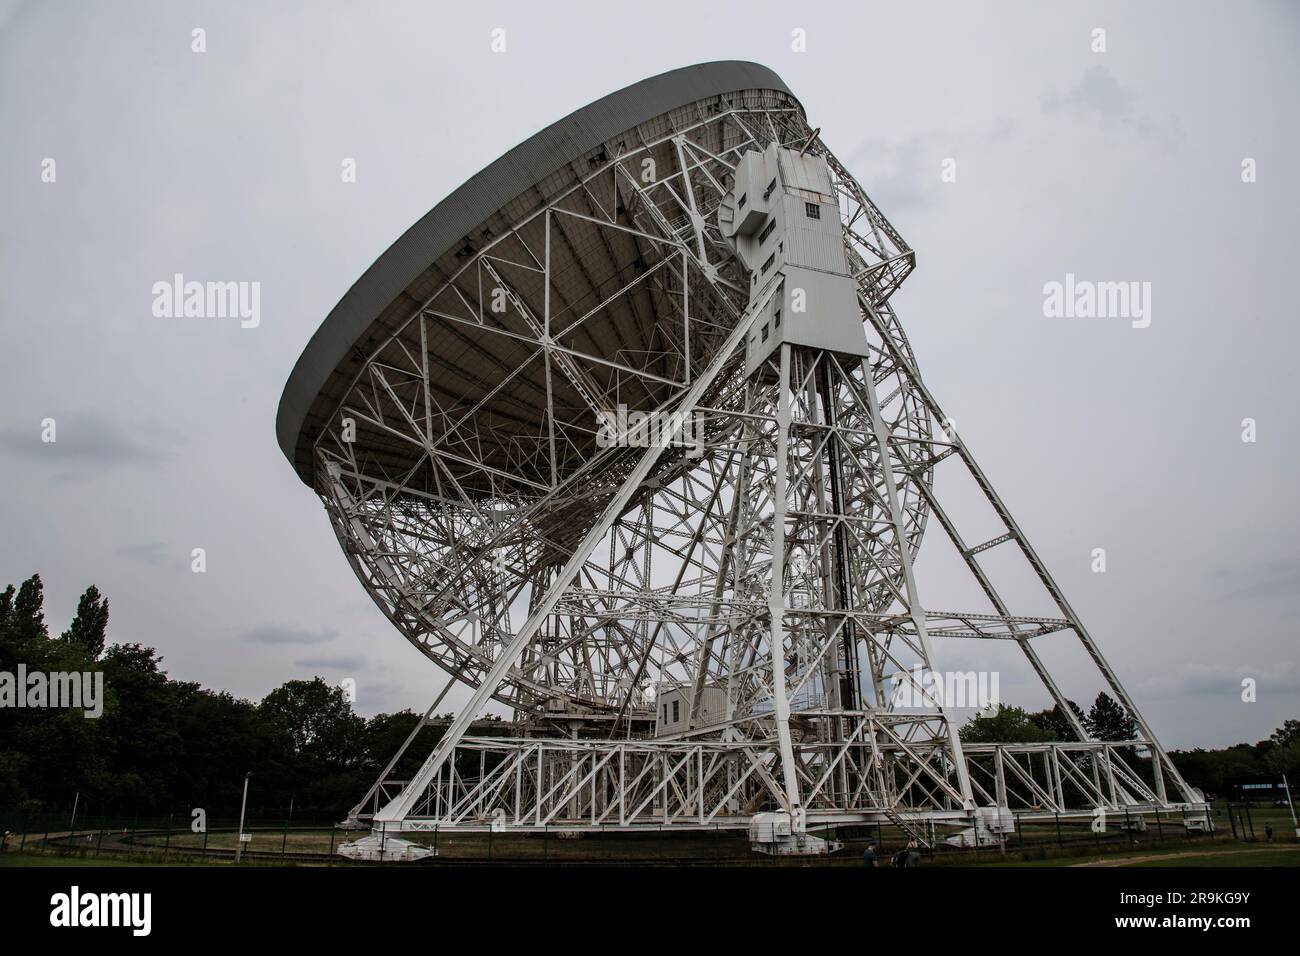 Vista del profilo dell'enorme radio-telescopio Lovell da 76 metri presso la banca Jodrell nel Cheshire che rileva le onde radio provenienti da fonti astronomiche Foto Stock